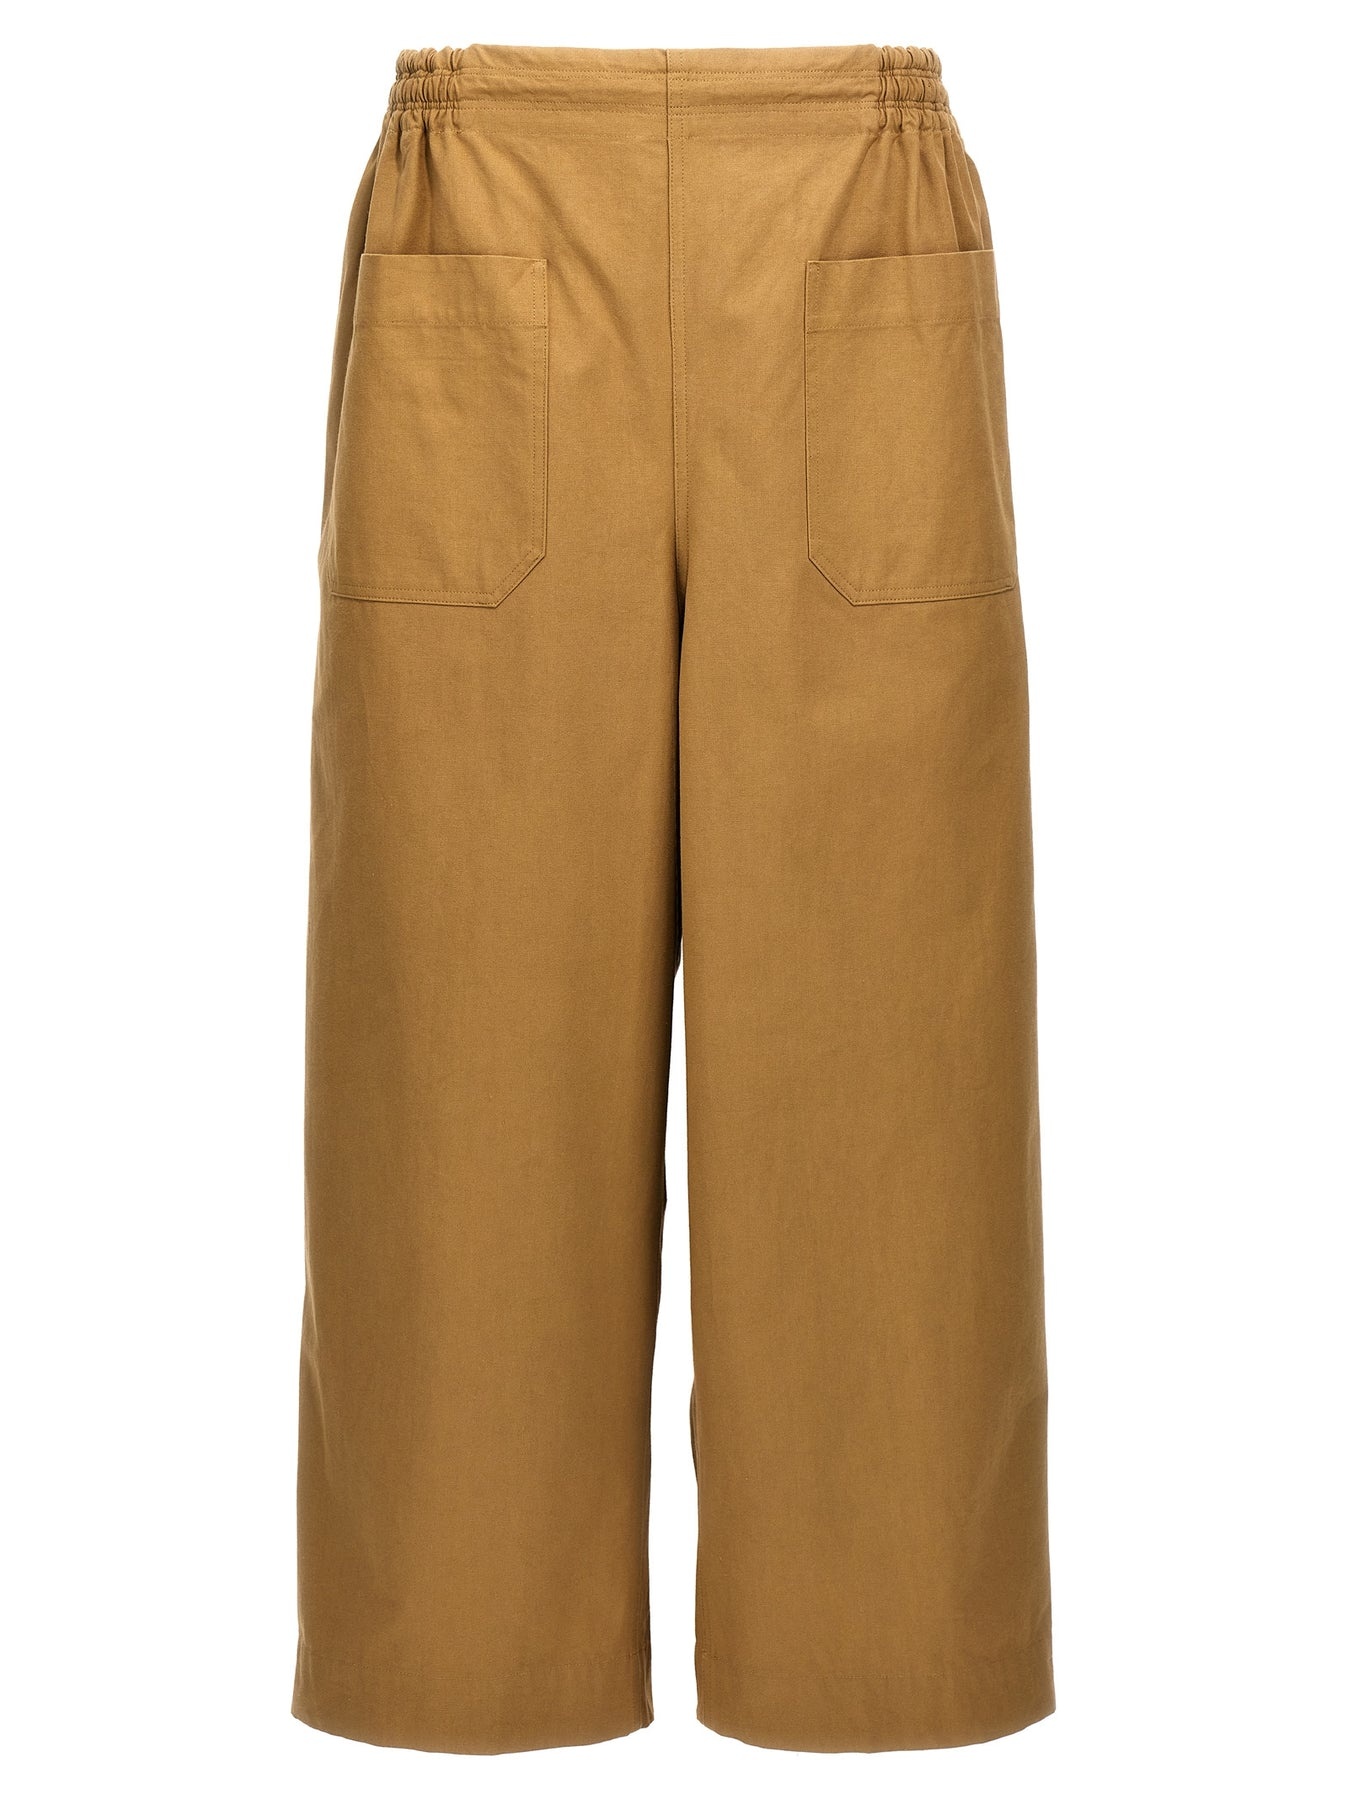 Cotton Trousers Pants Beige - 1